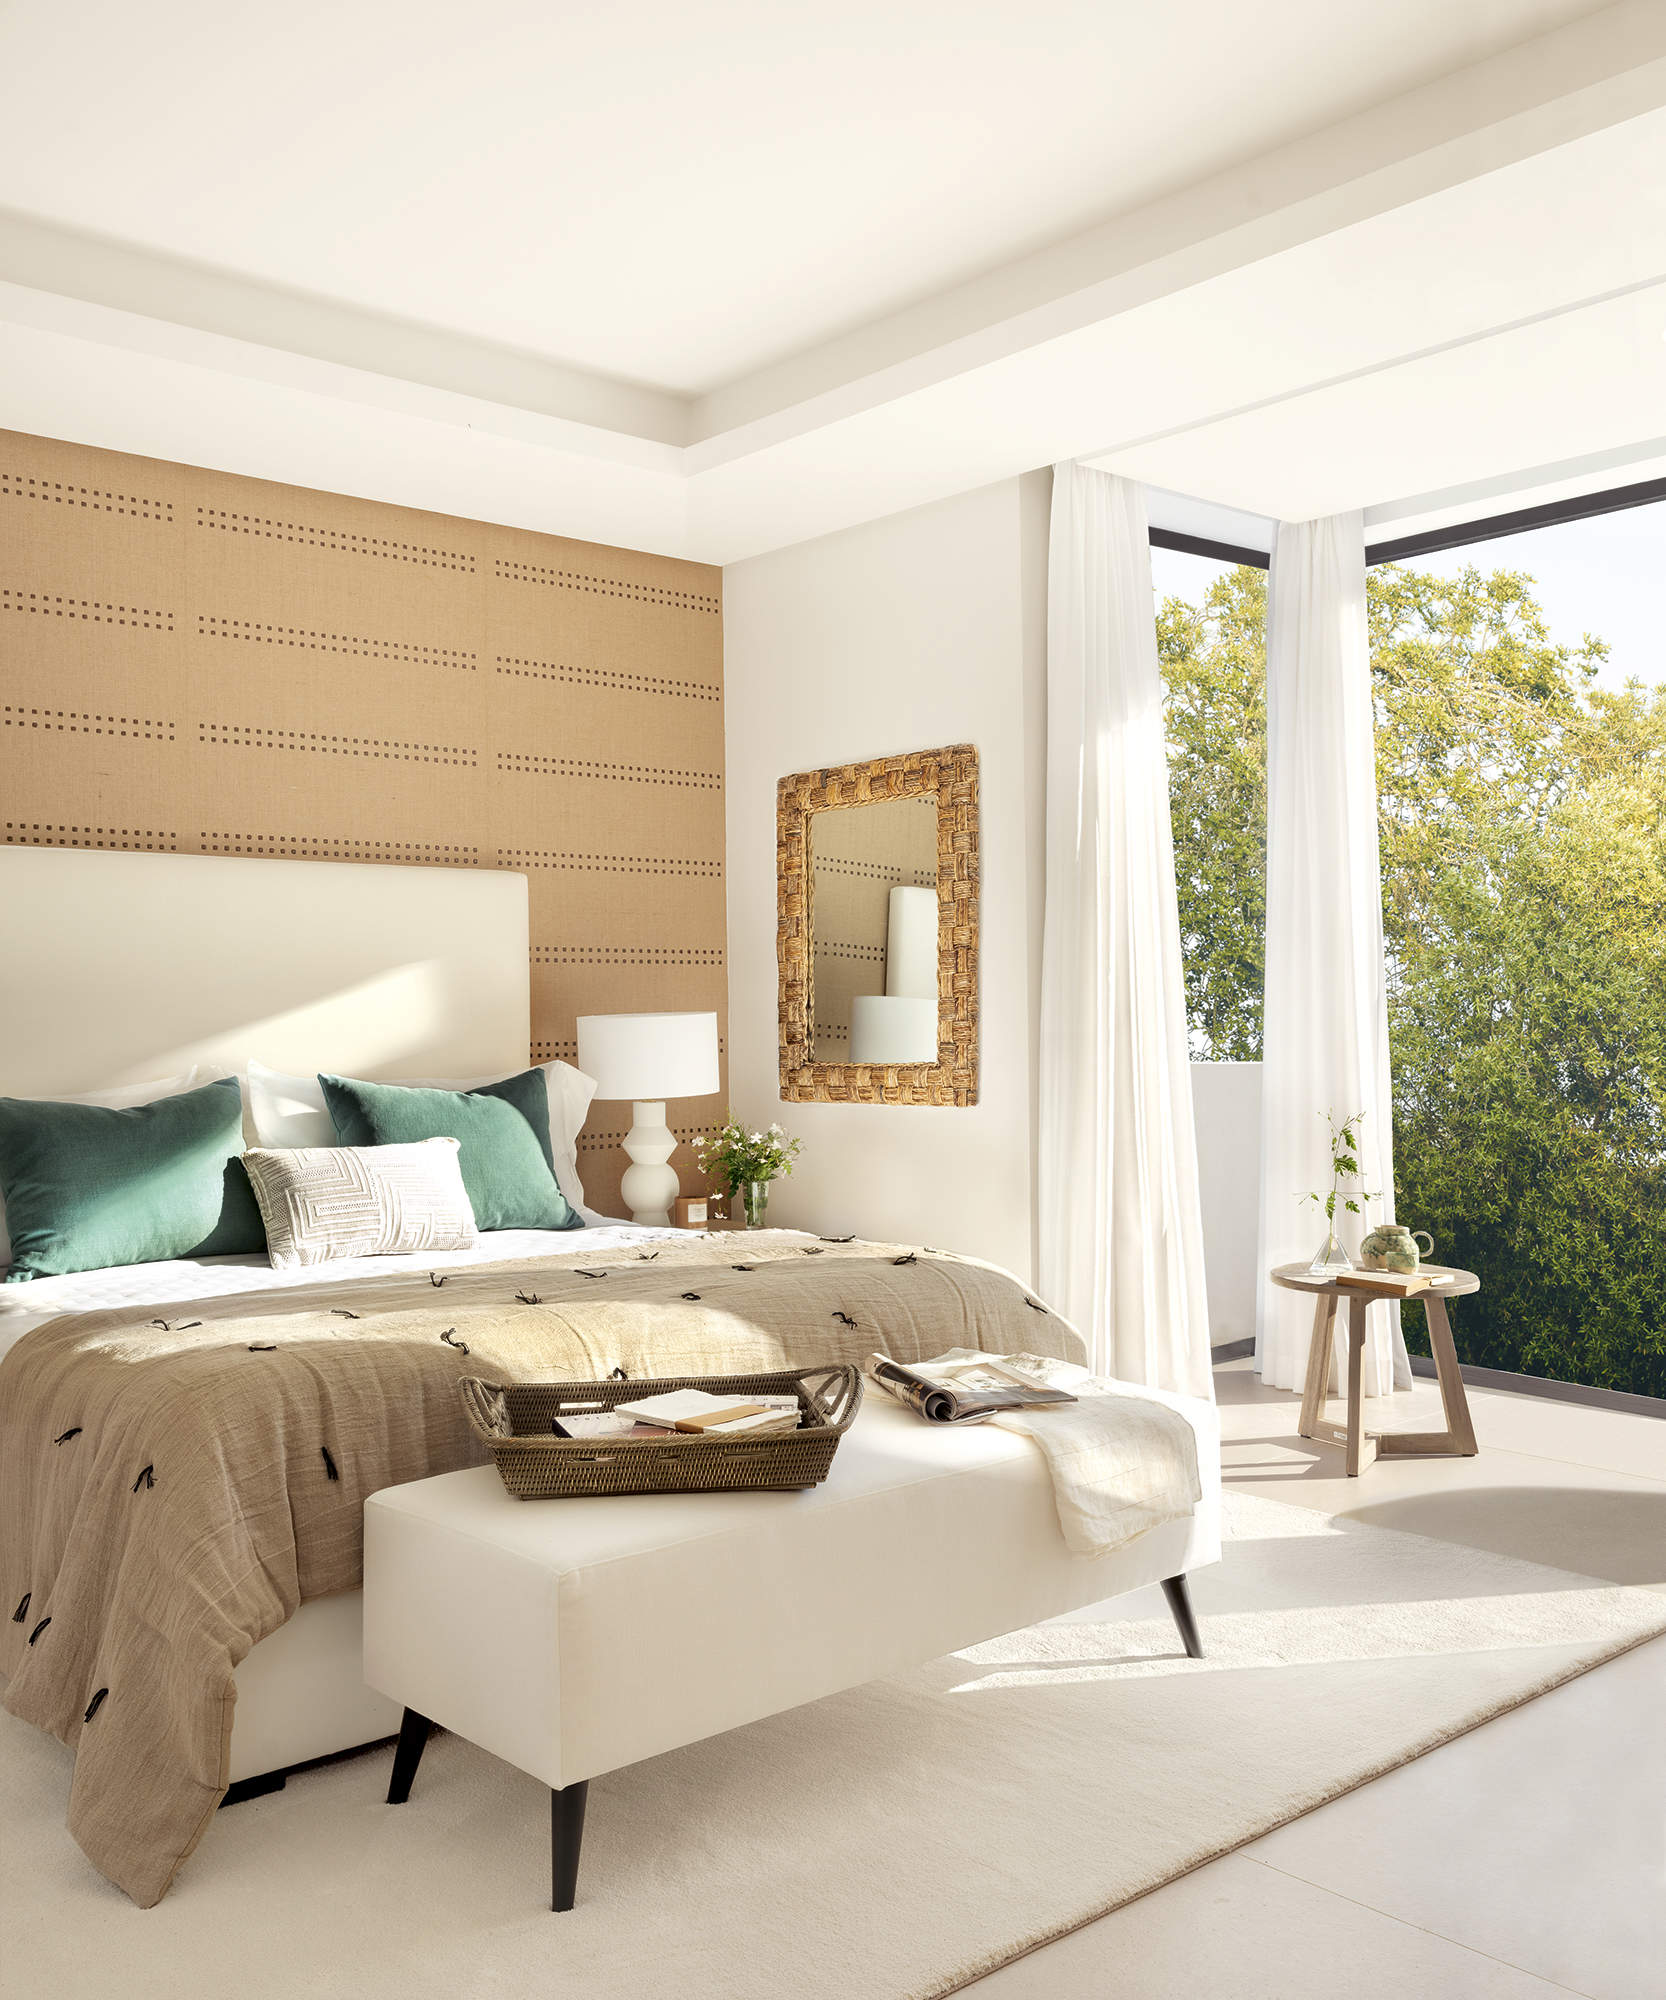 Dormitorio principal con gran ventanal, suelo de gres, pared empapelada, espejo, cabezal tapizado, alfombra blanca